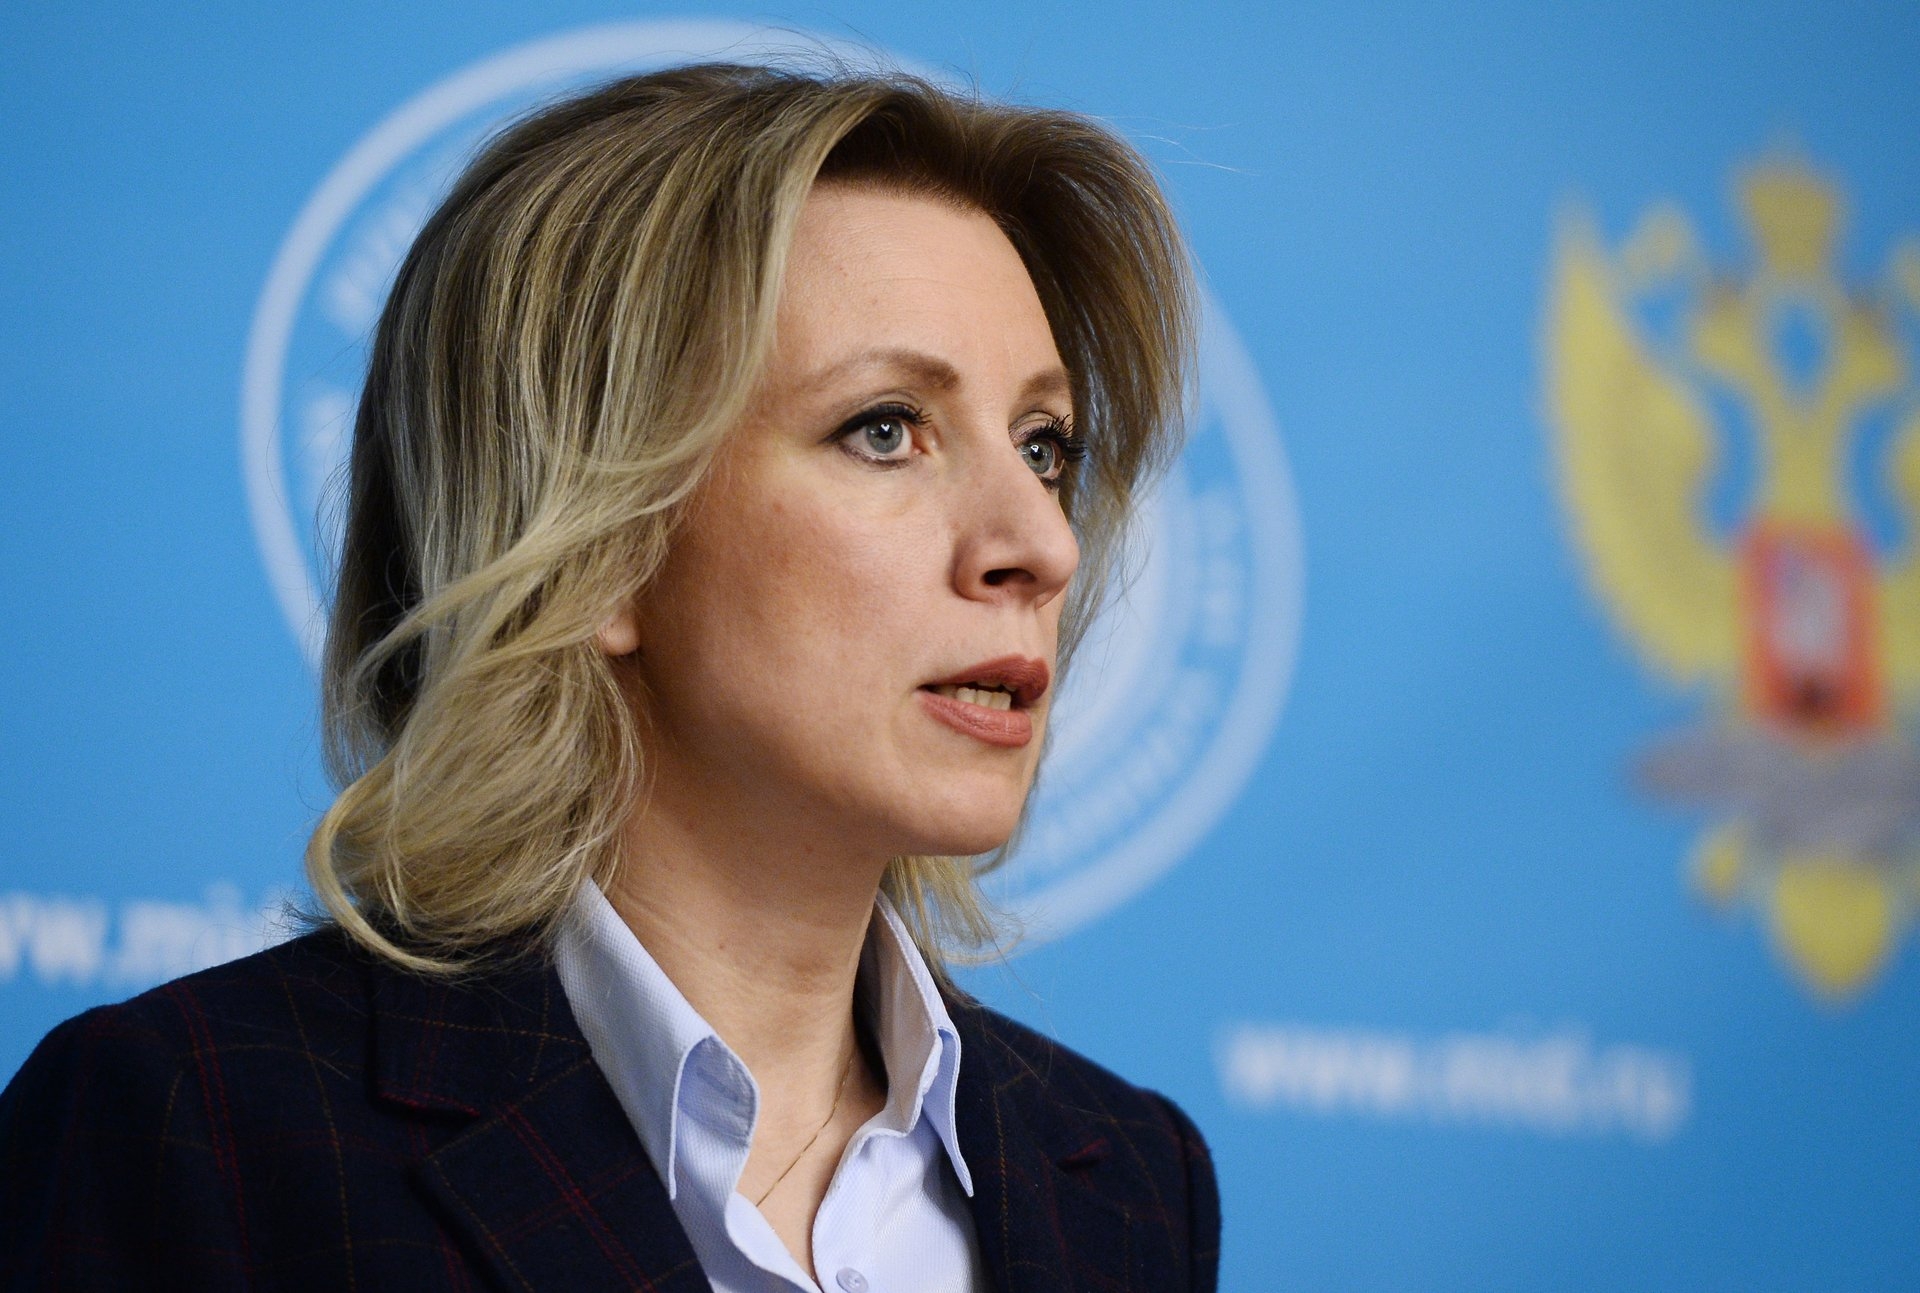 Захарова: Киеву надо обеспечить права жителям Донбасса, чтобы вернуть их лояльность